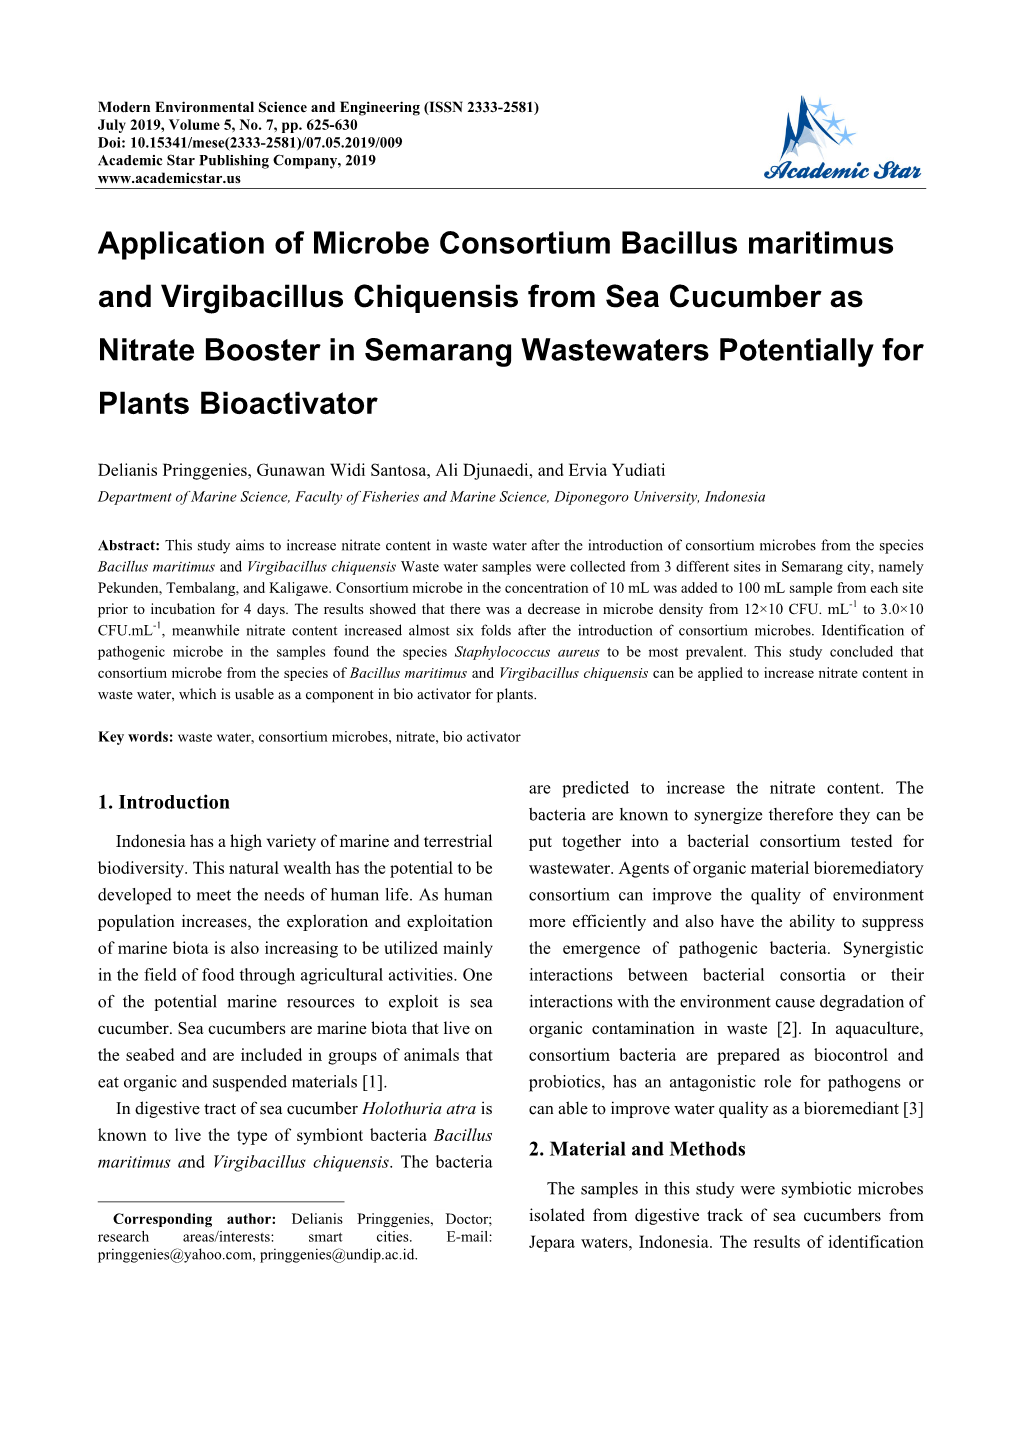 Application of Microbe Consortium Bacillus Maritimus and Virgibacillus